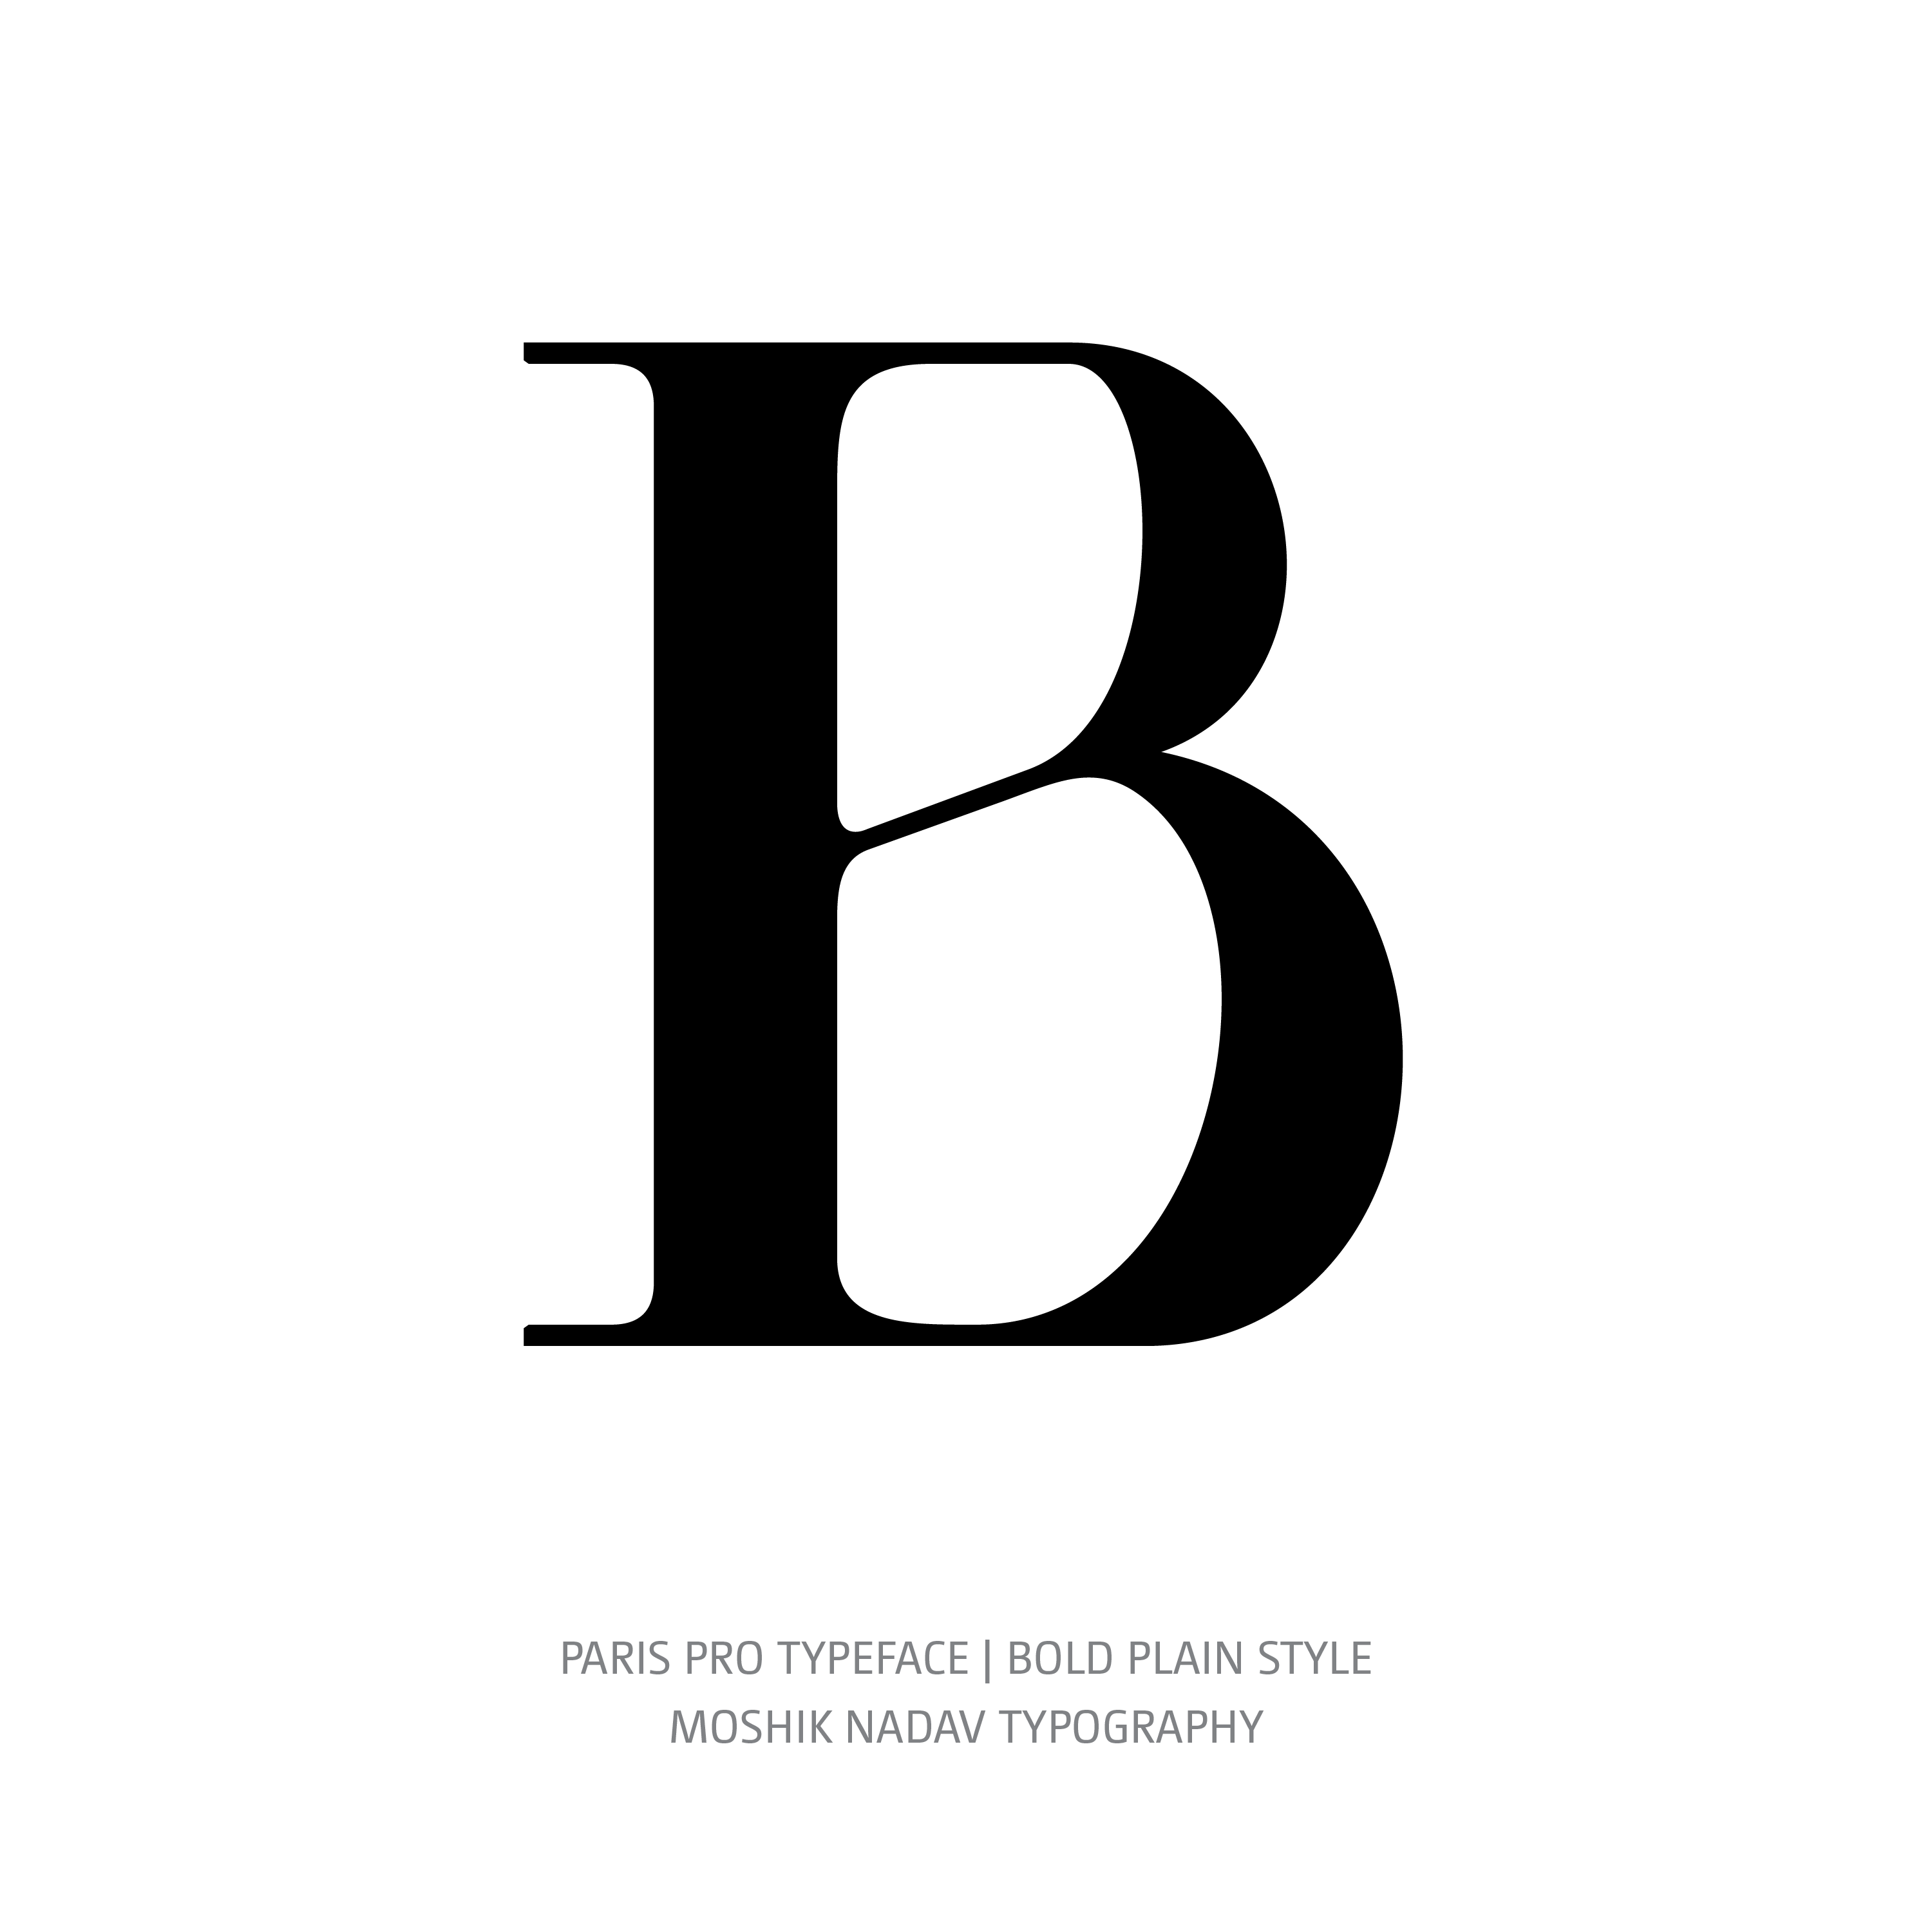 Paris Pro Typeface Bold Plain B